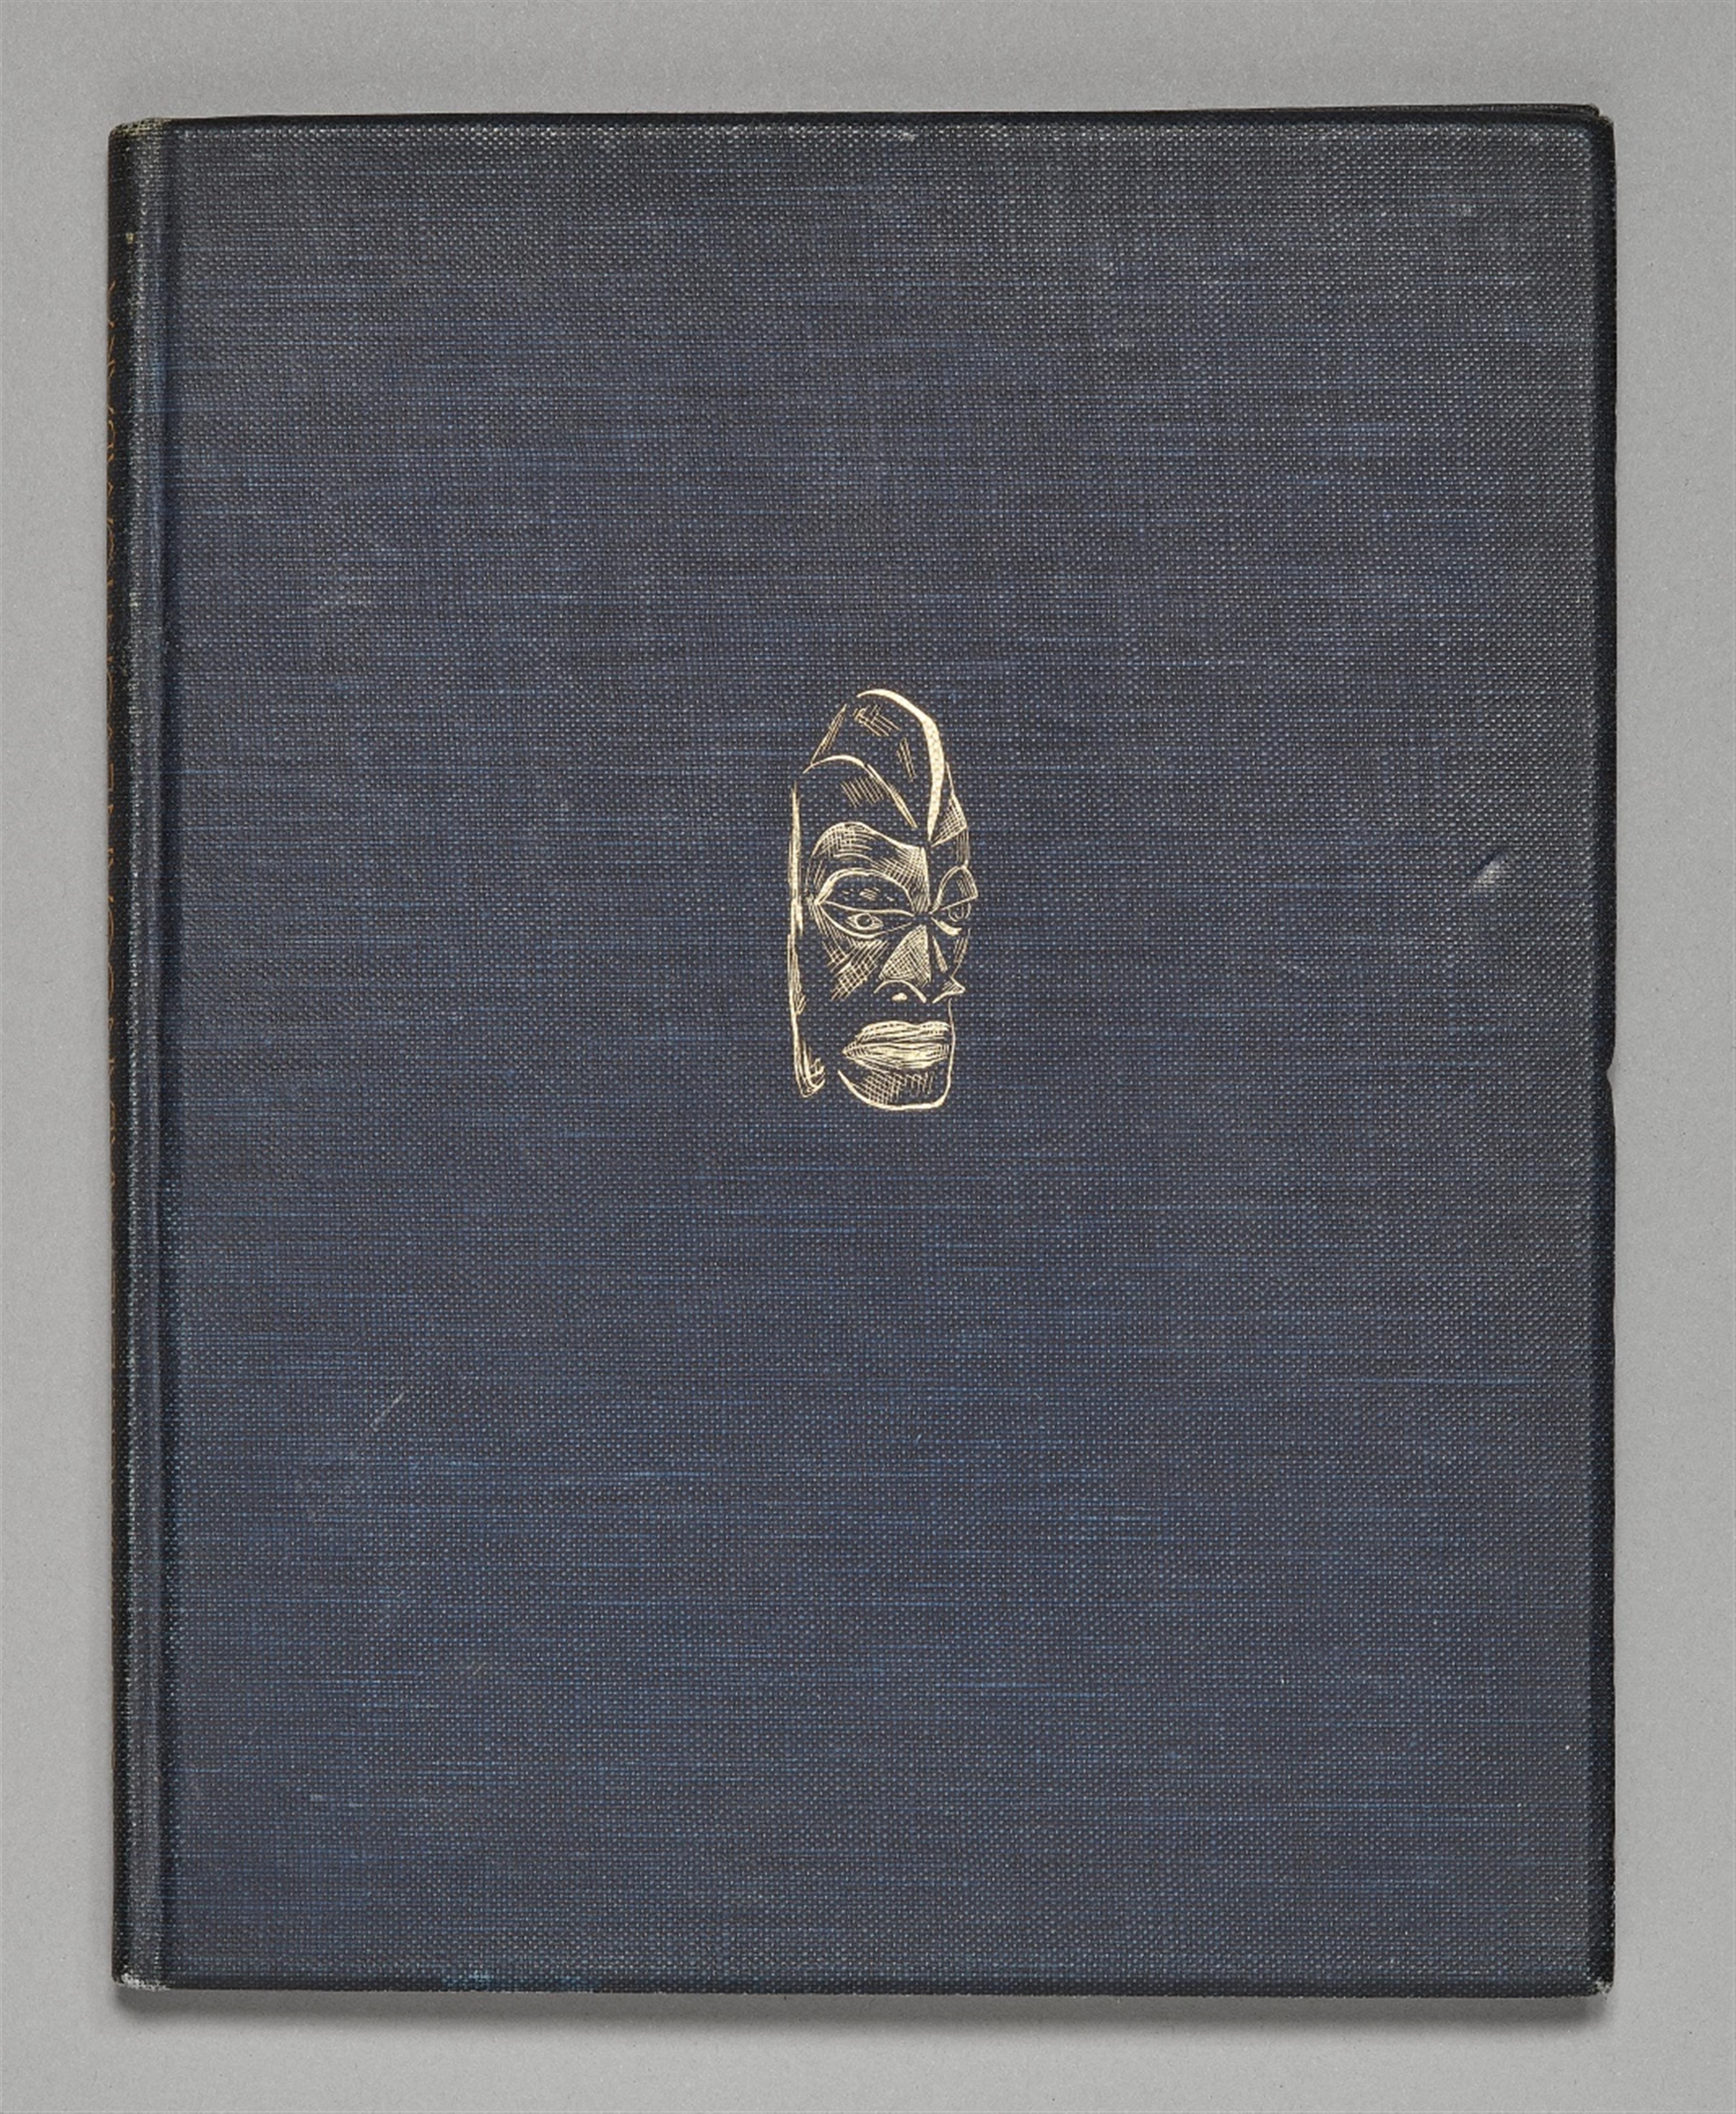 DIE MALANGGANE VON TOMBARA 
By Prof. Dr. Augustin Krämer
Edited by Georg Müller, Munich, 1925 - image-1